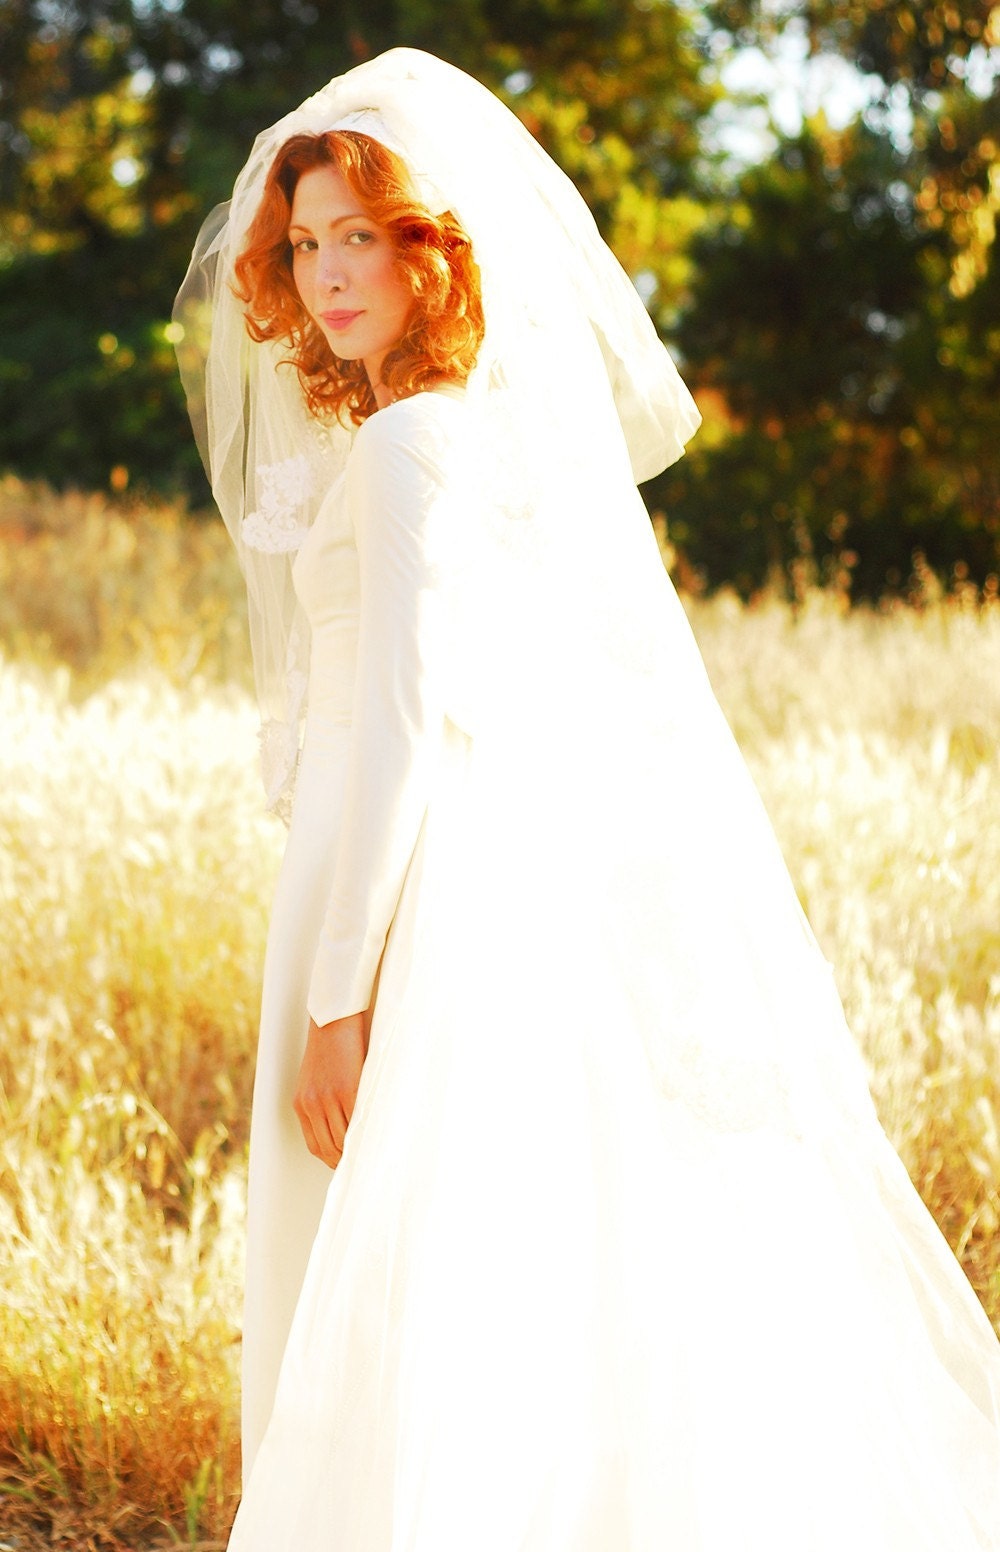 Jackie O Wedding Dress by TavinShop on Etsy floral wedding gown train 